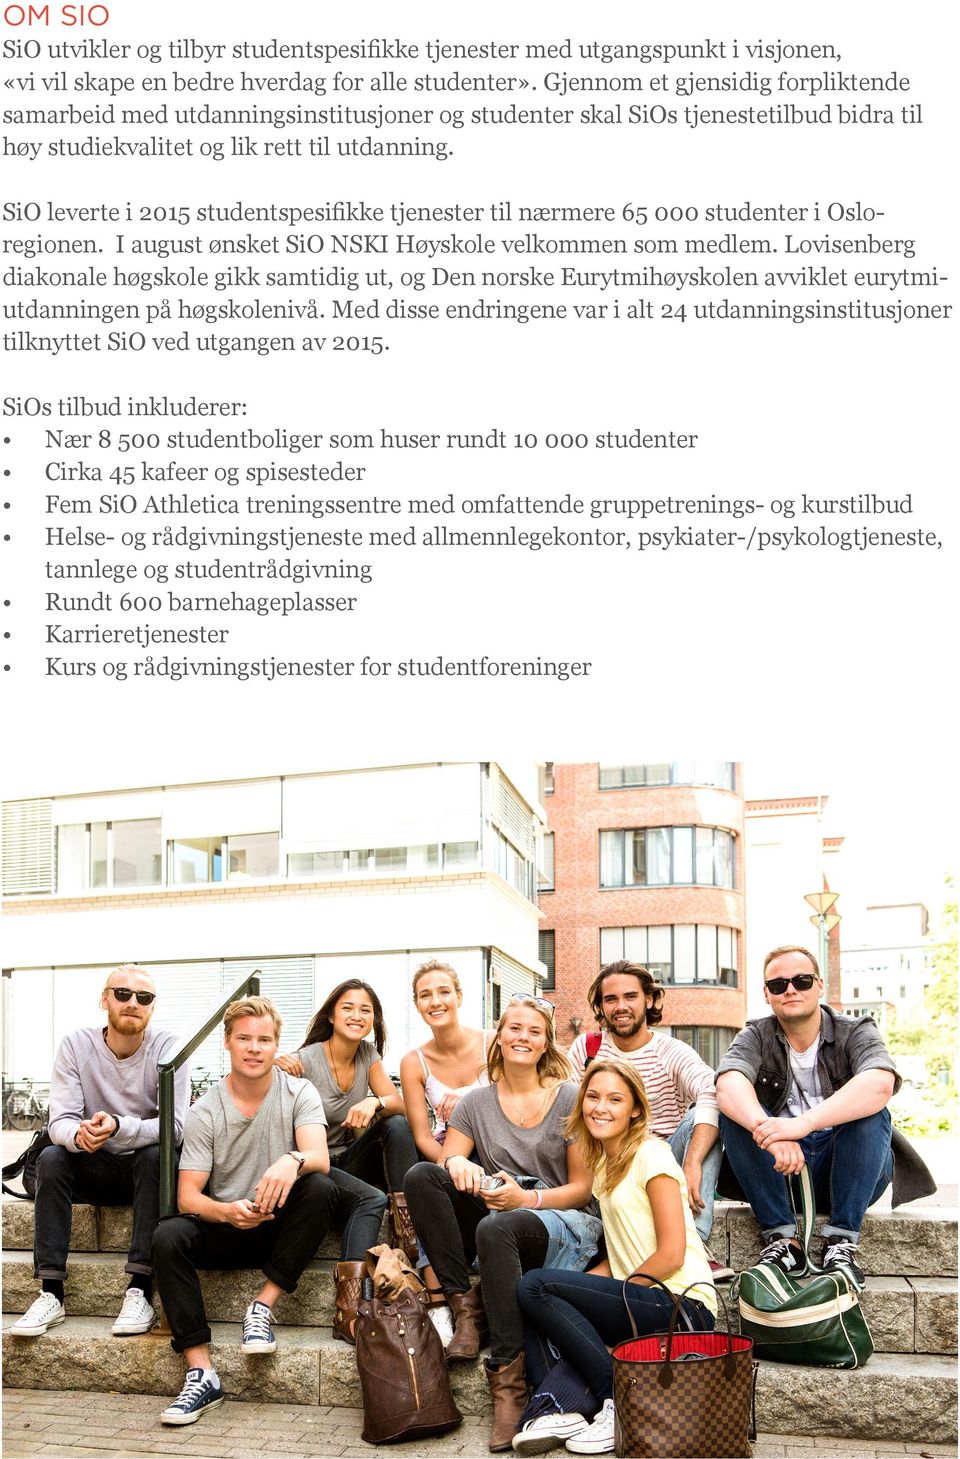 SiO leverte i 2015 studentspesifikke tjenester til nærmere 65 000 studenter i Osloregionen. I august ønsket SiO NSKI Høyskole velkommen som medlem.